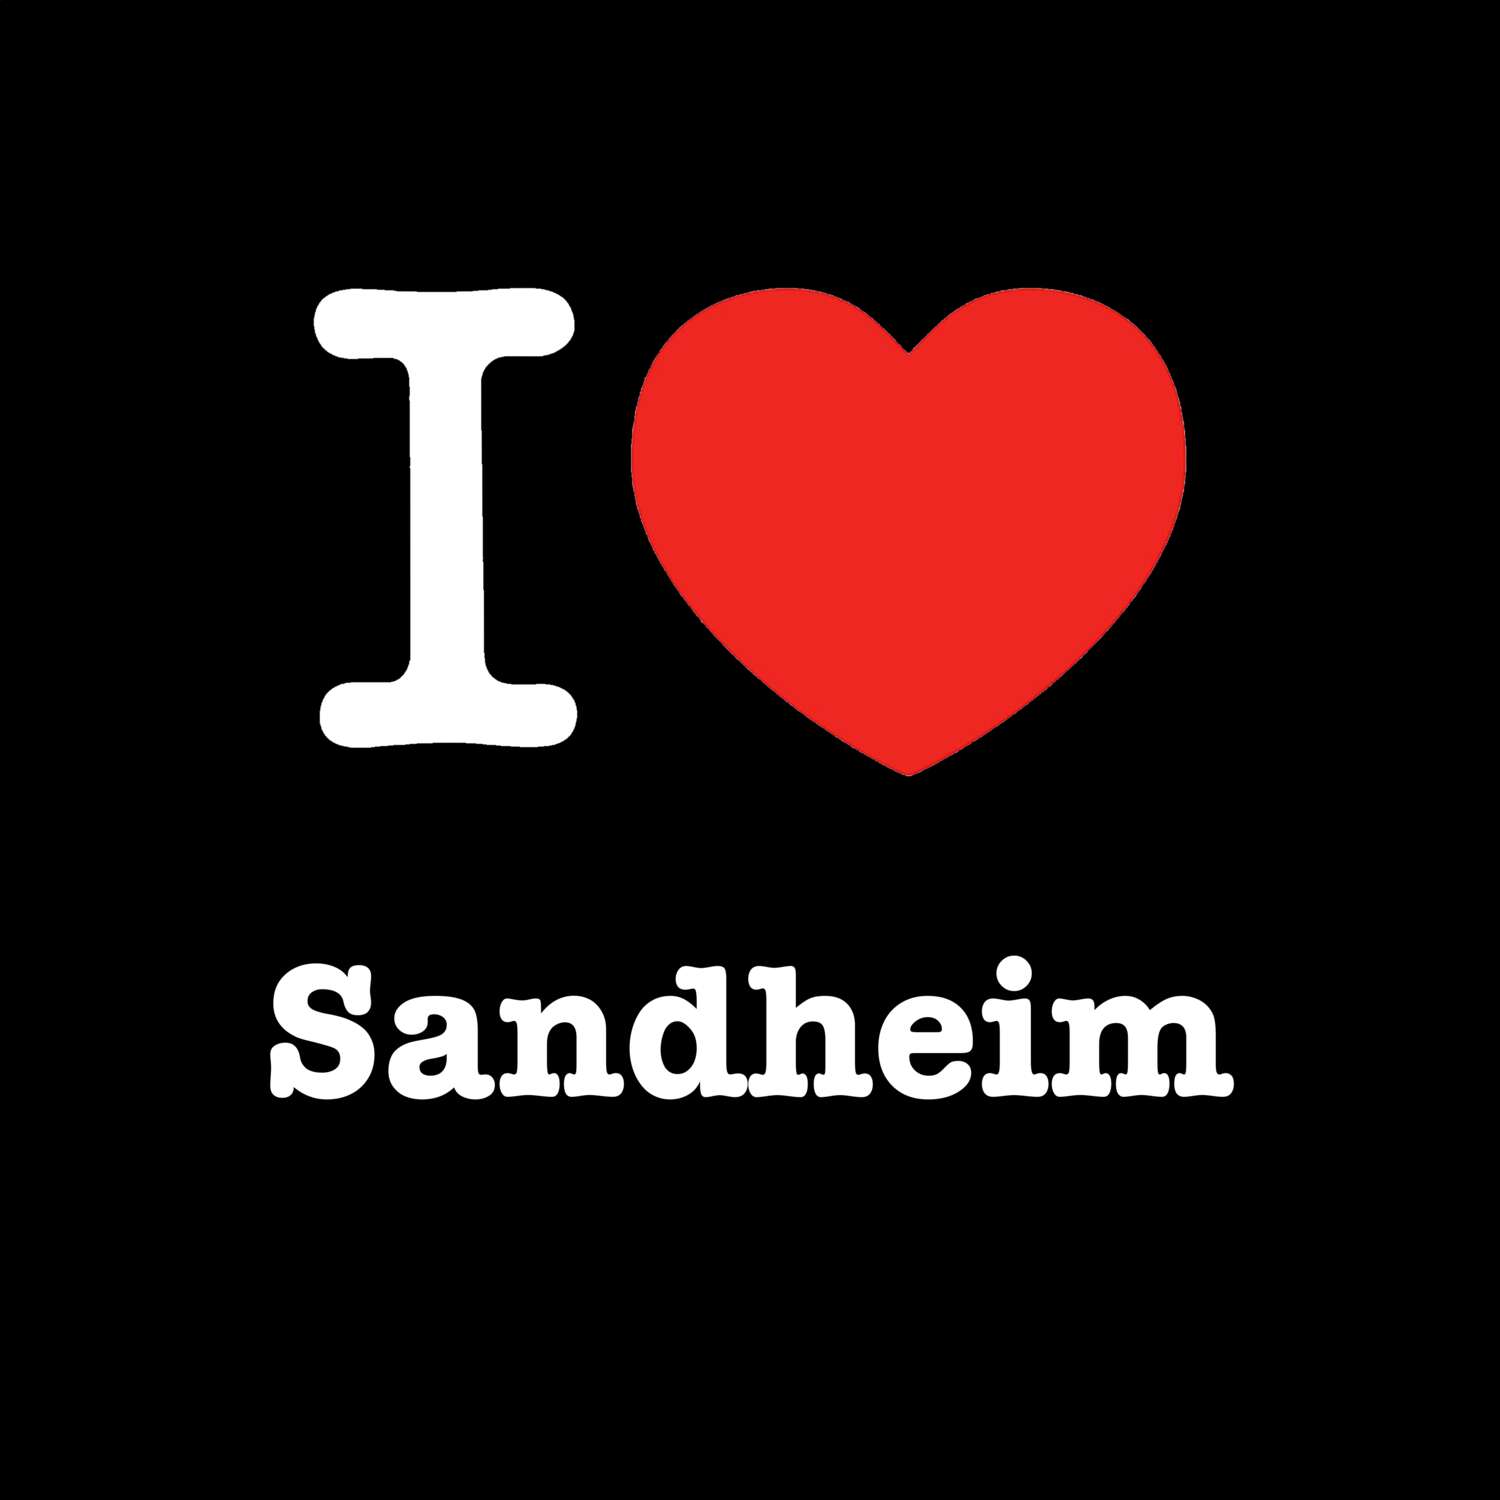 Sandheim T-Shirt »I love«